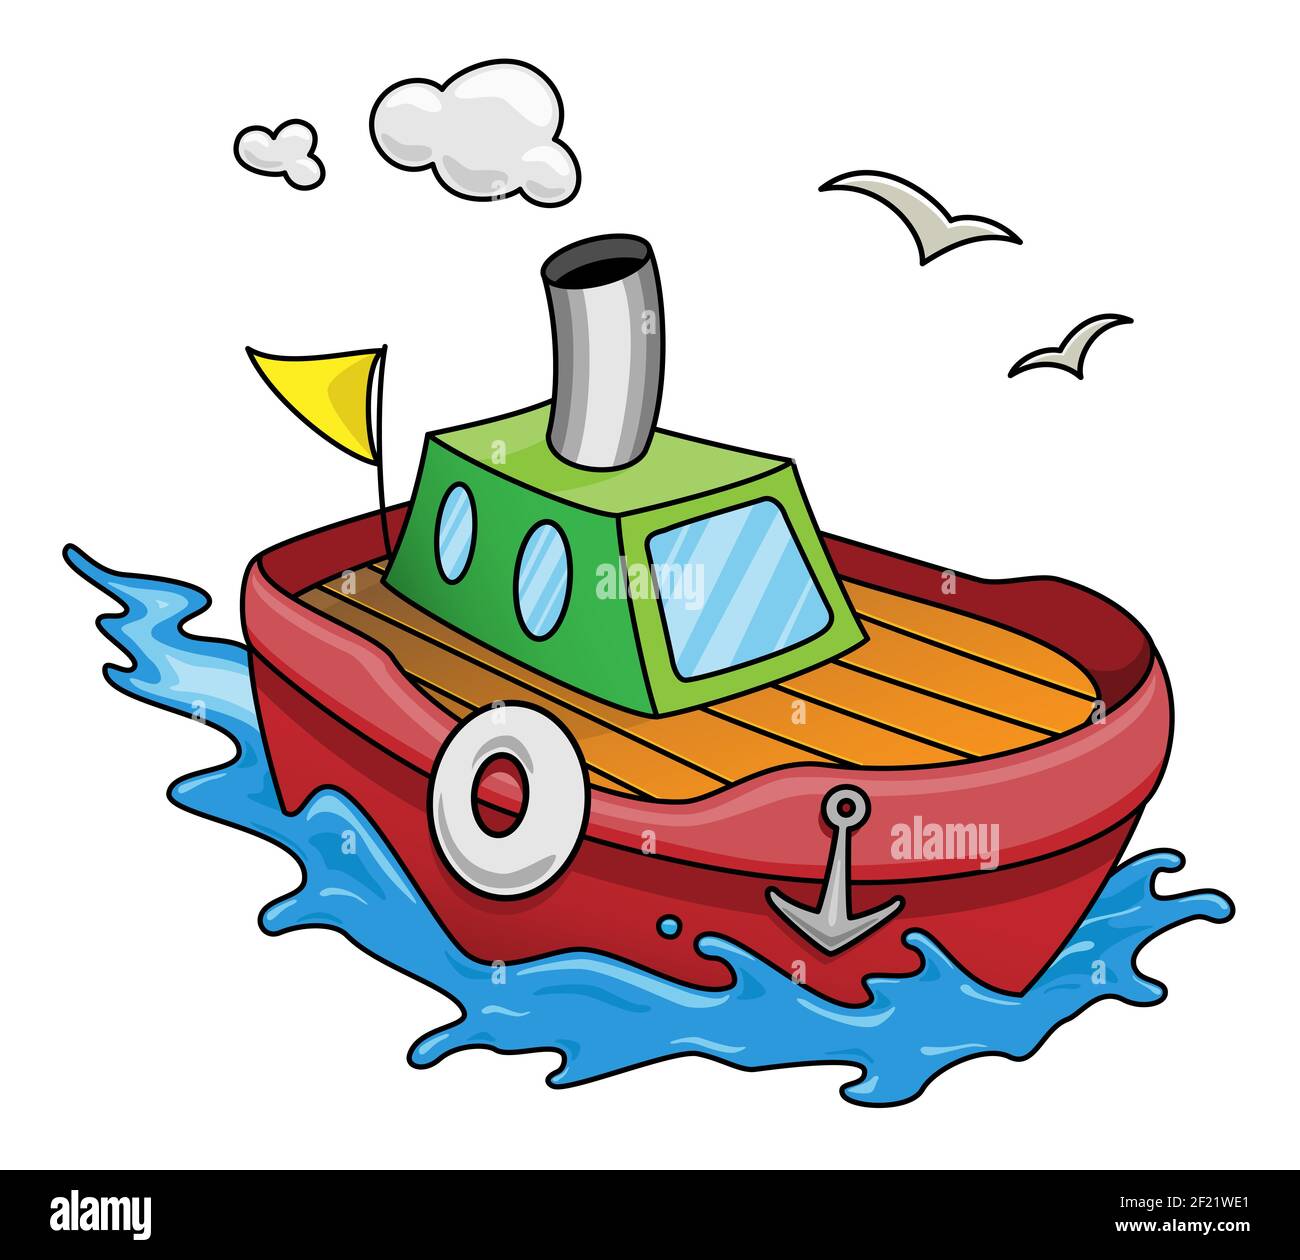 Bunte Kinder Karikatur Illustration eines Bootes auf dem Meer.Vektor Cliparts isoliert auf weißem Hintergrund. Stock Vektor